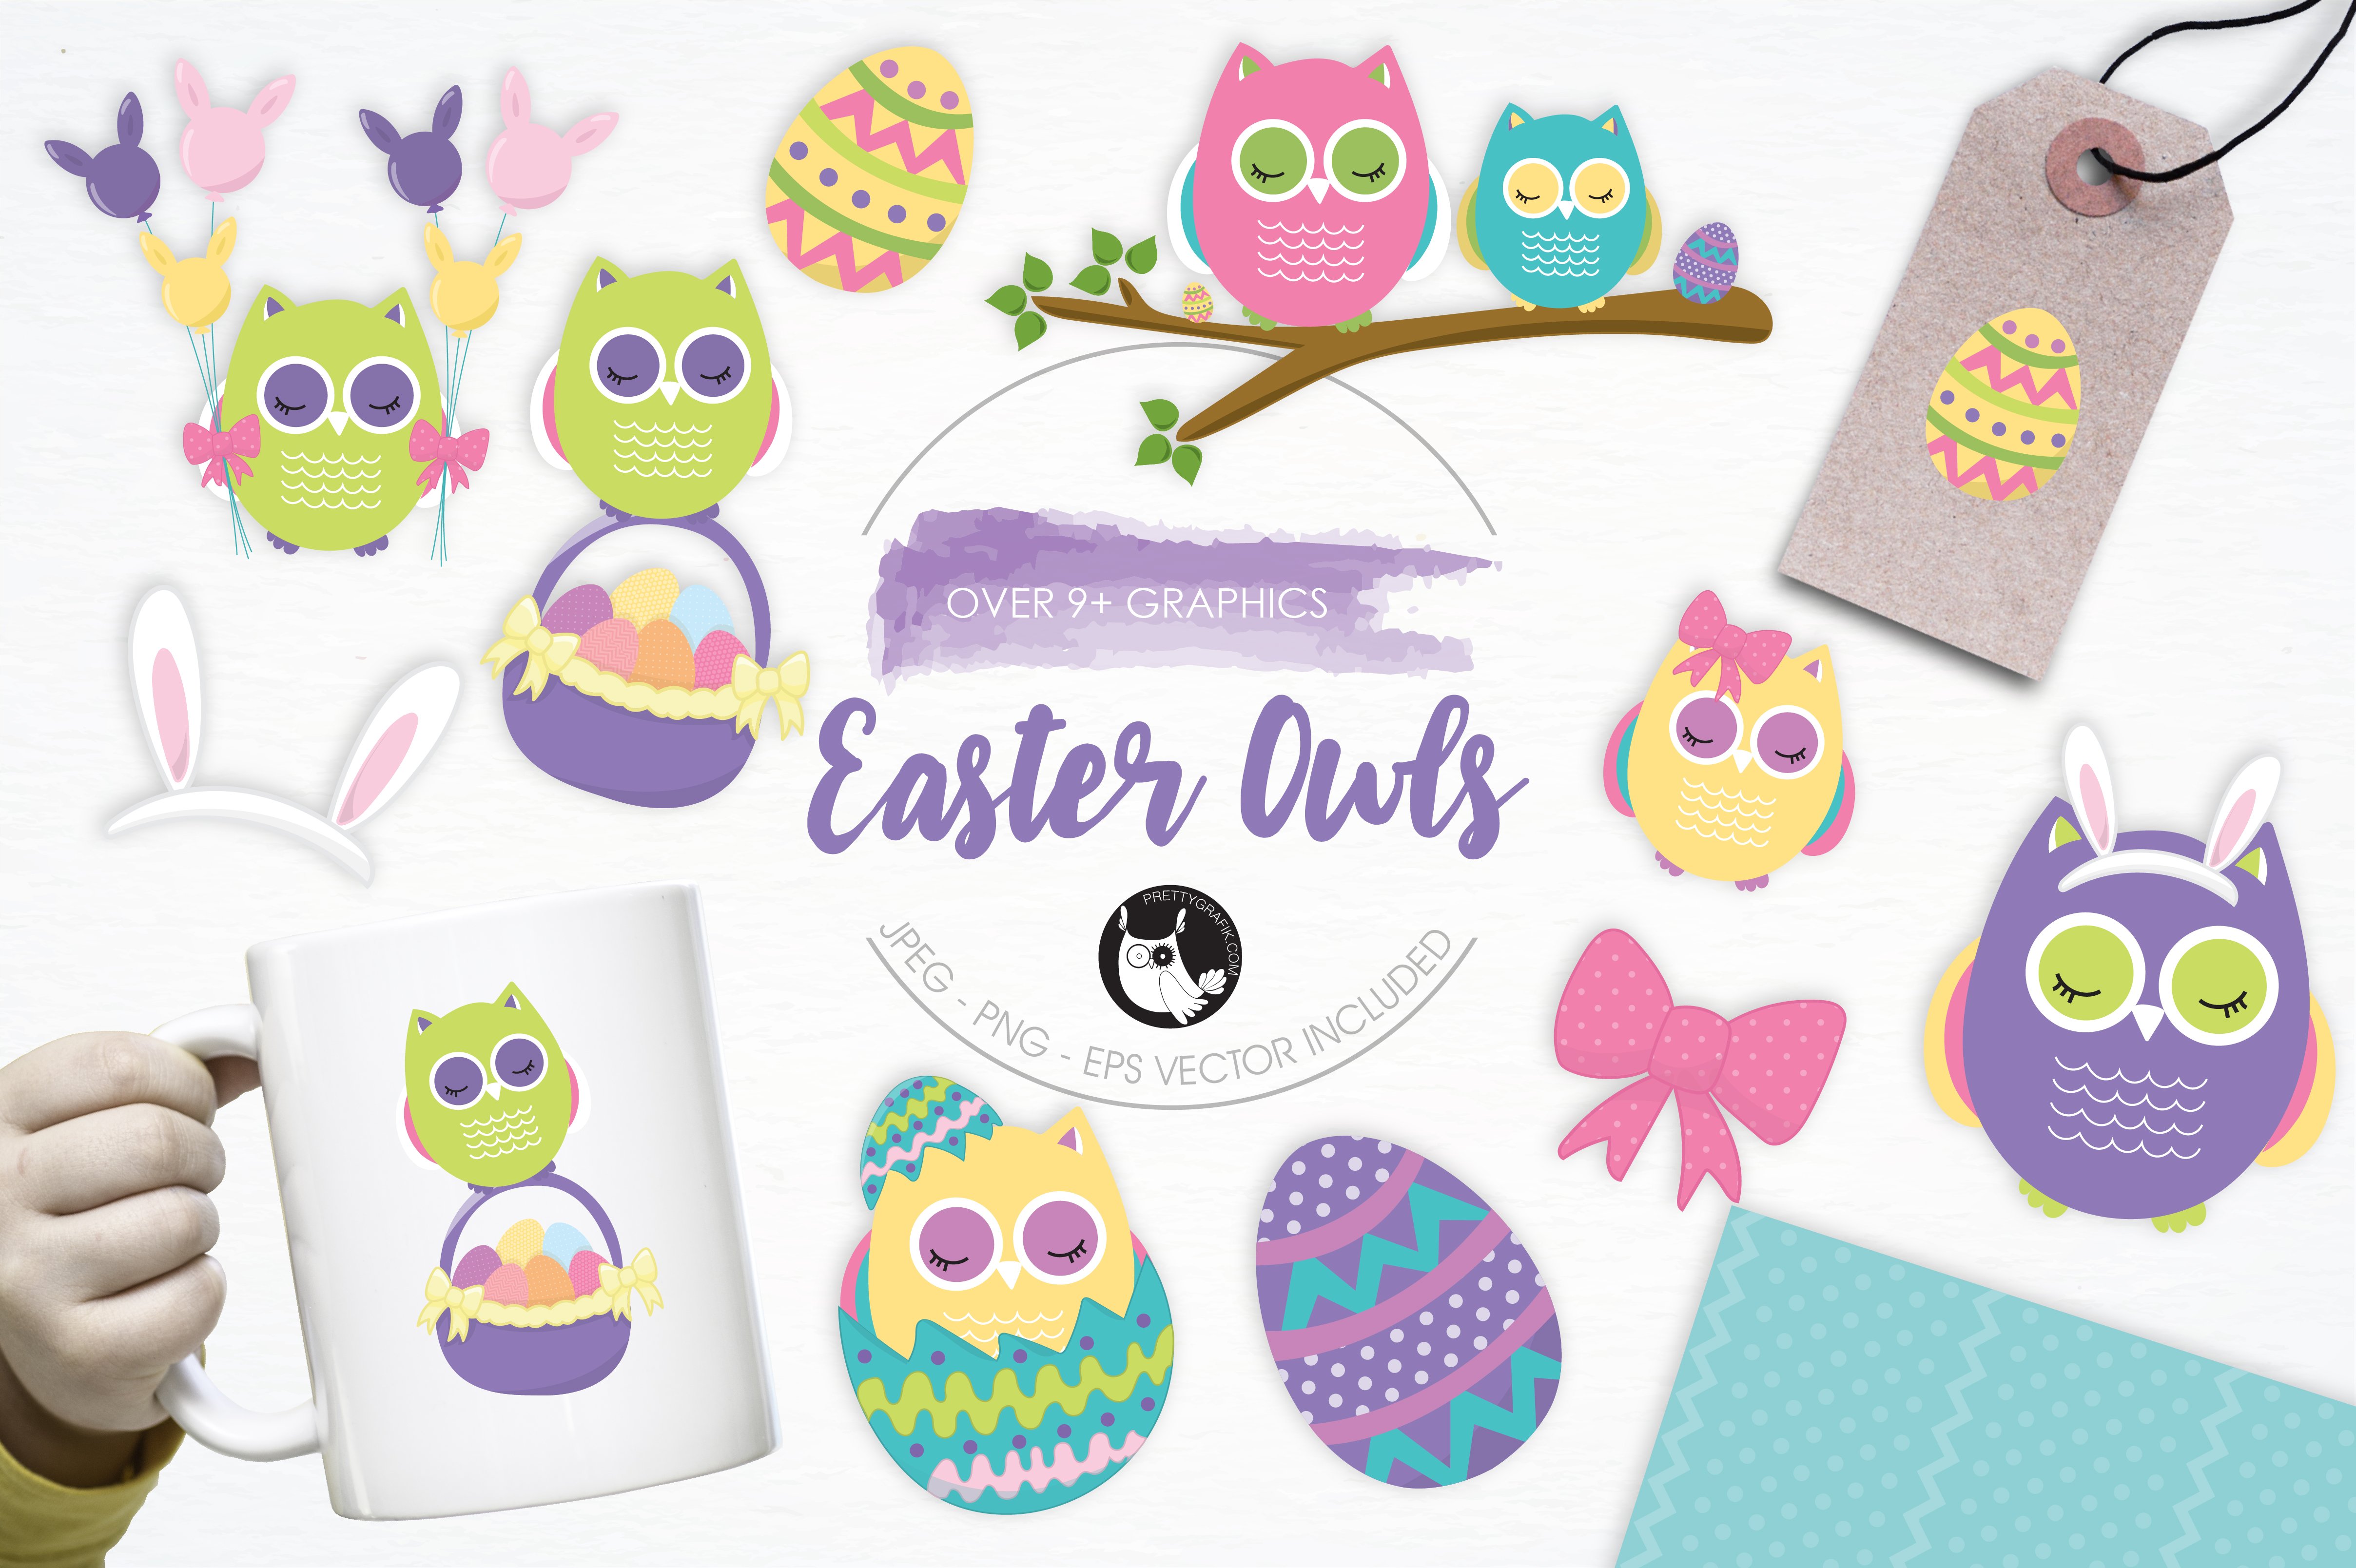 Easter Owls illustration pack - Vector Image